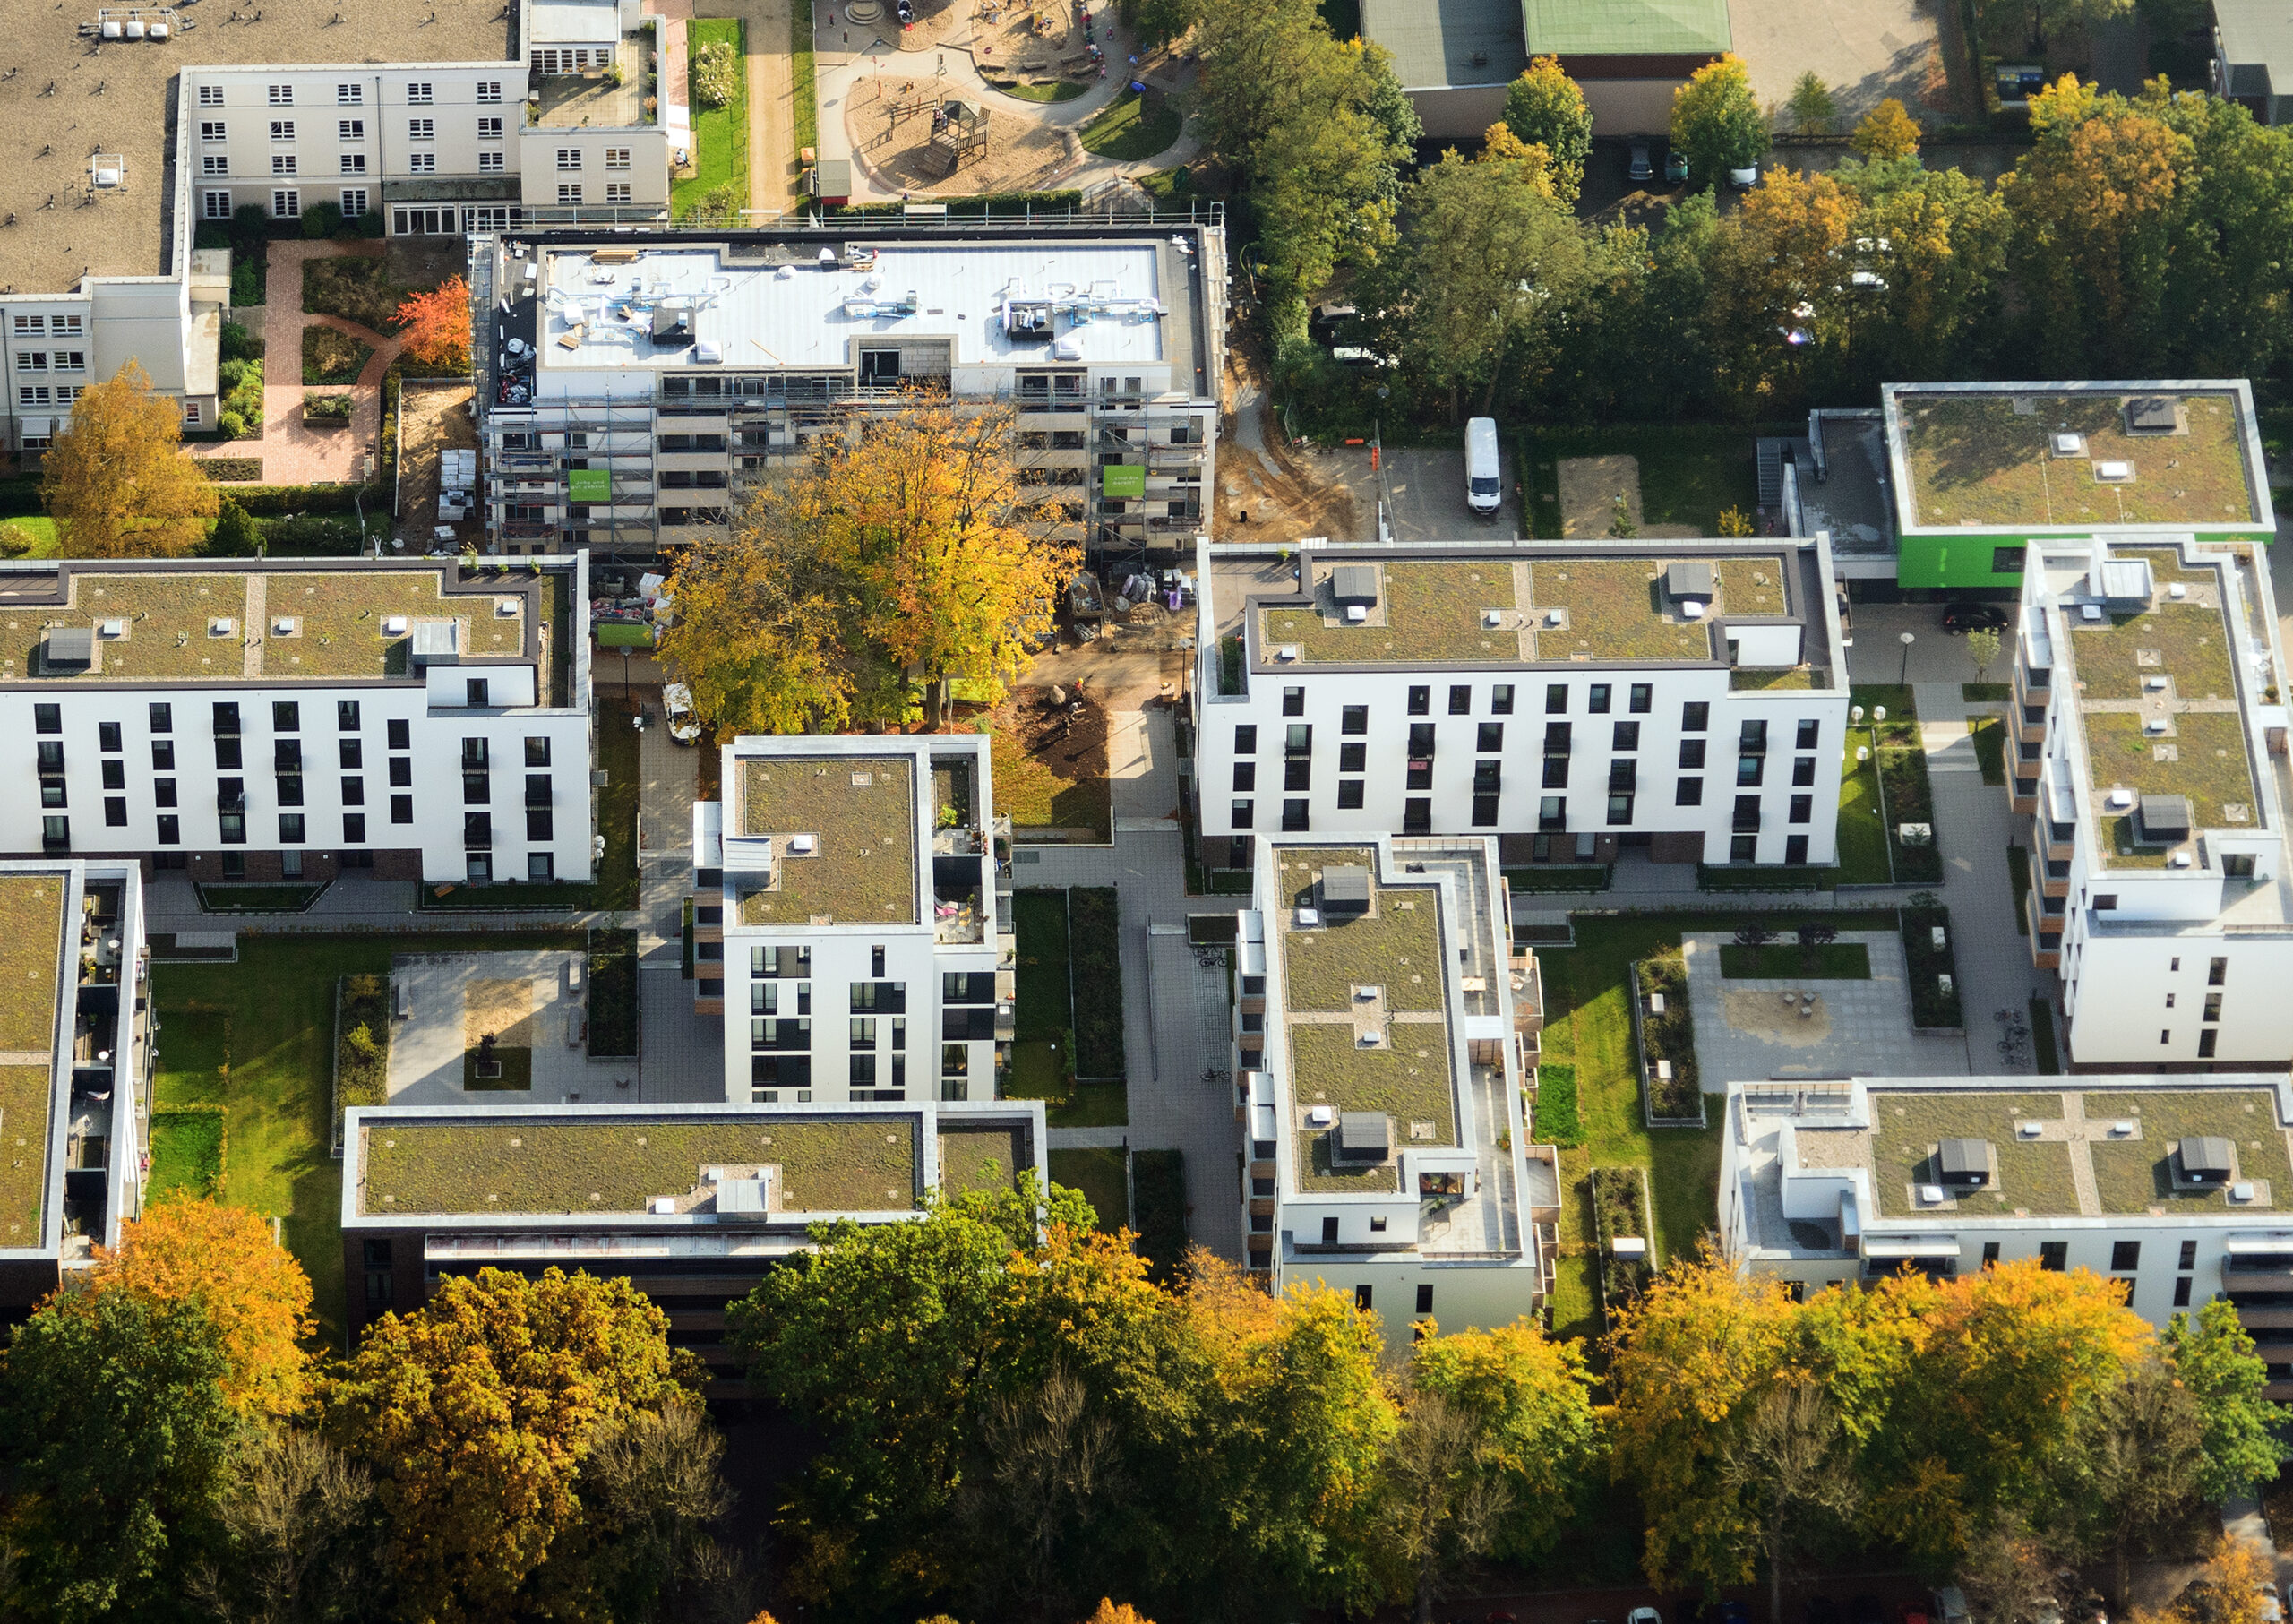 Luftbild von der Quartiersentwicklung Alsterberg in Hamburg